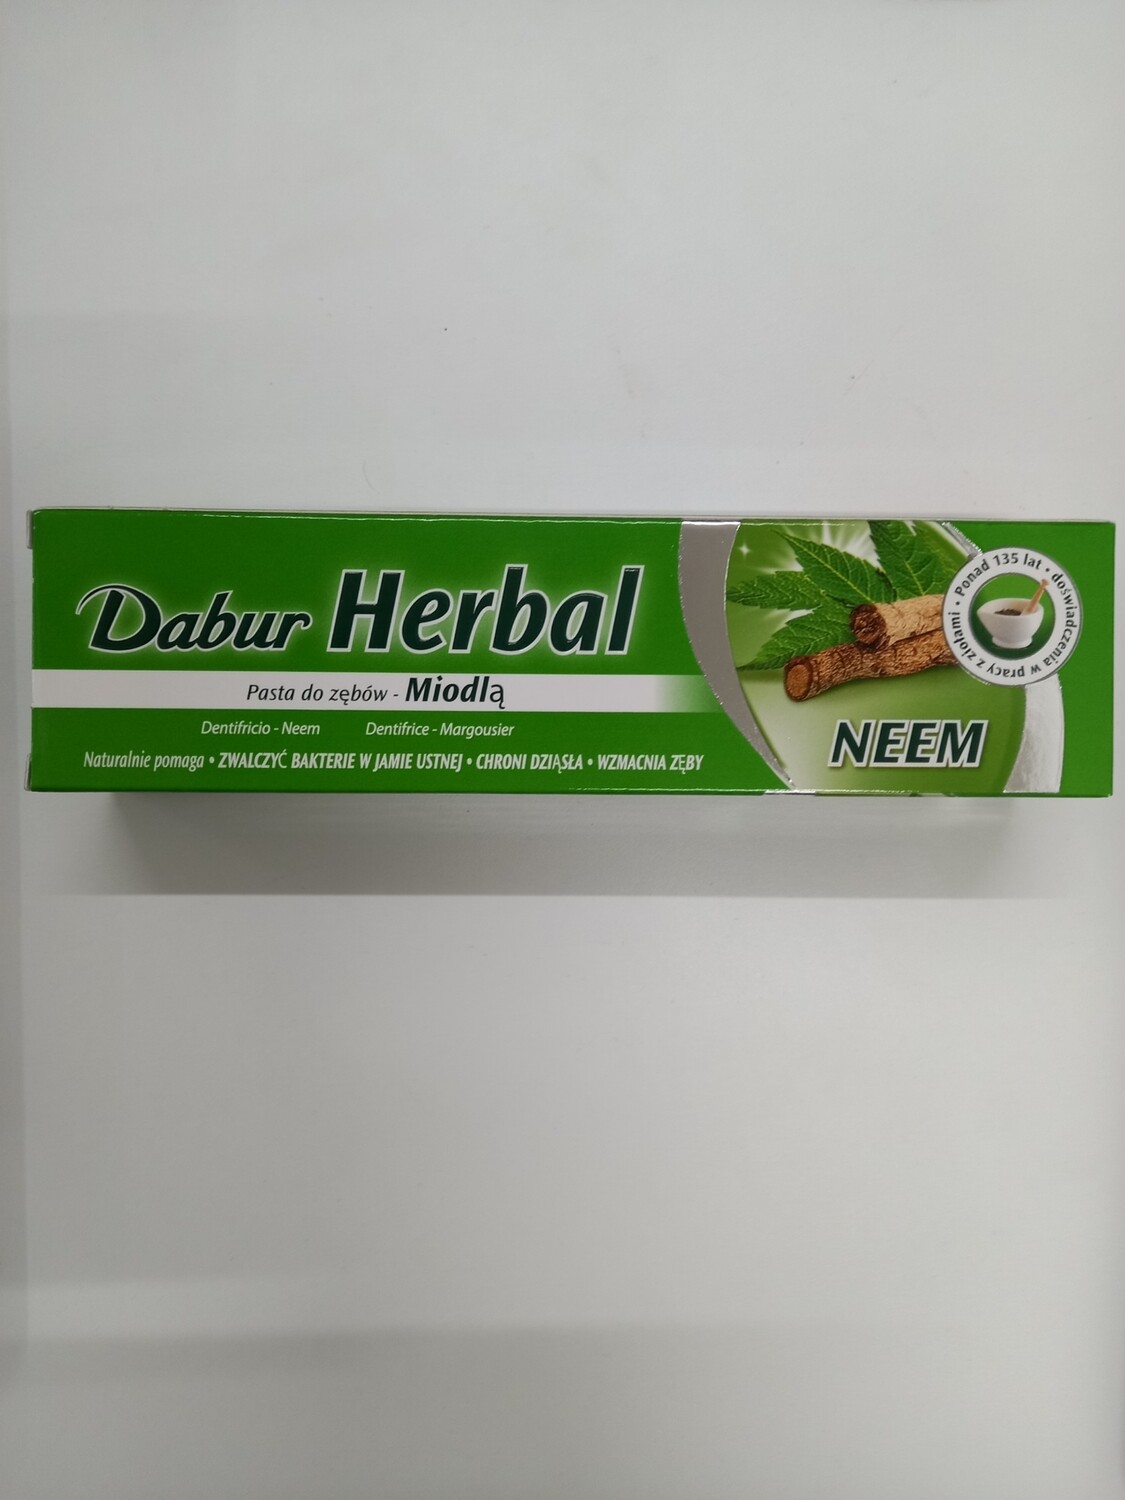 Dabur Herbal Neem Toothpaste (pflanzliche Neem-Zahnpasta) 100ml